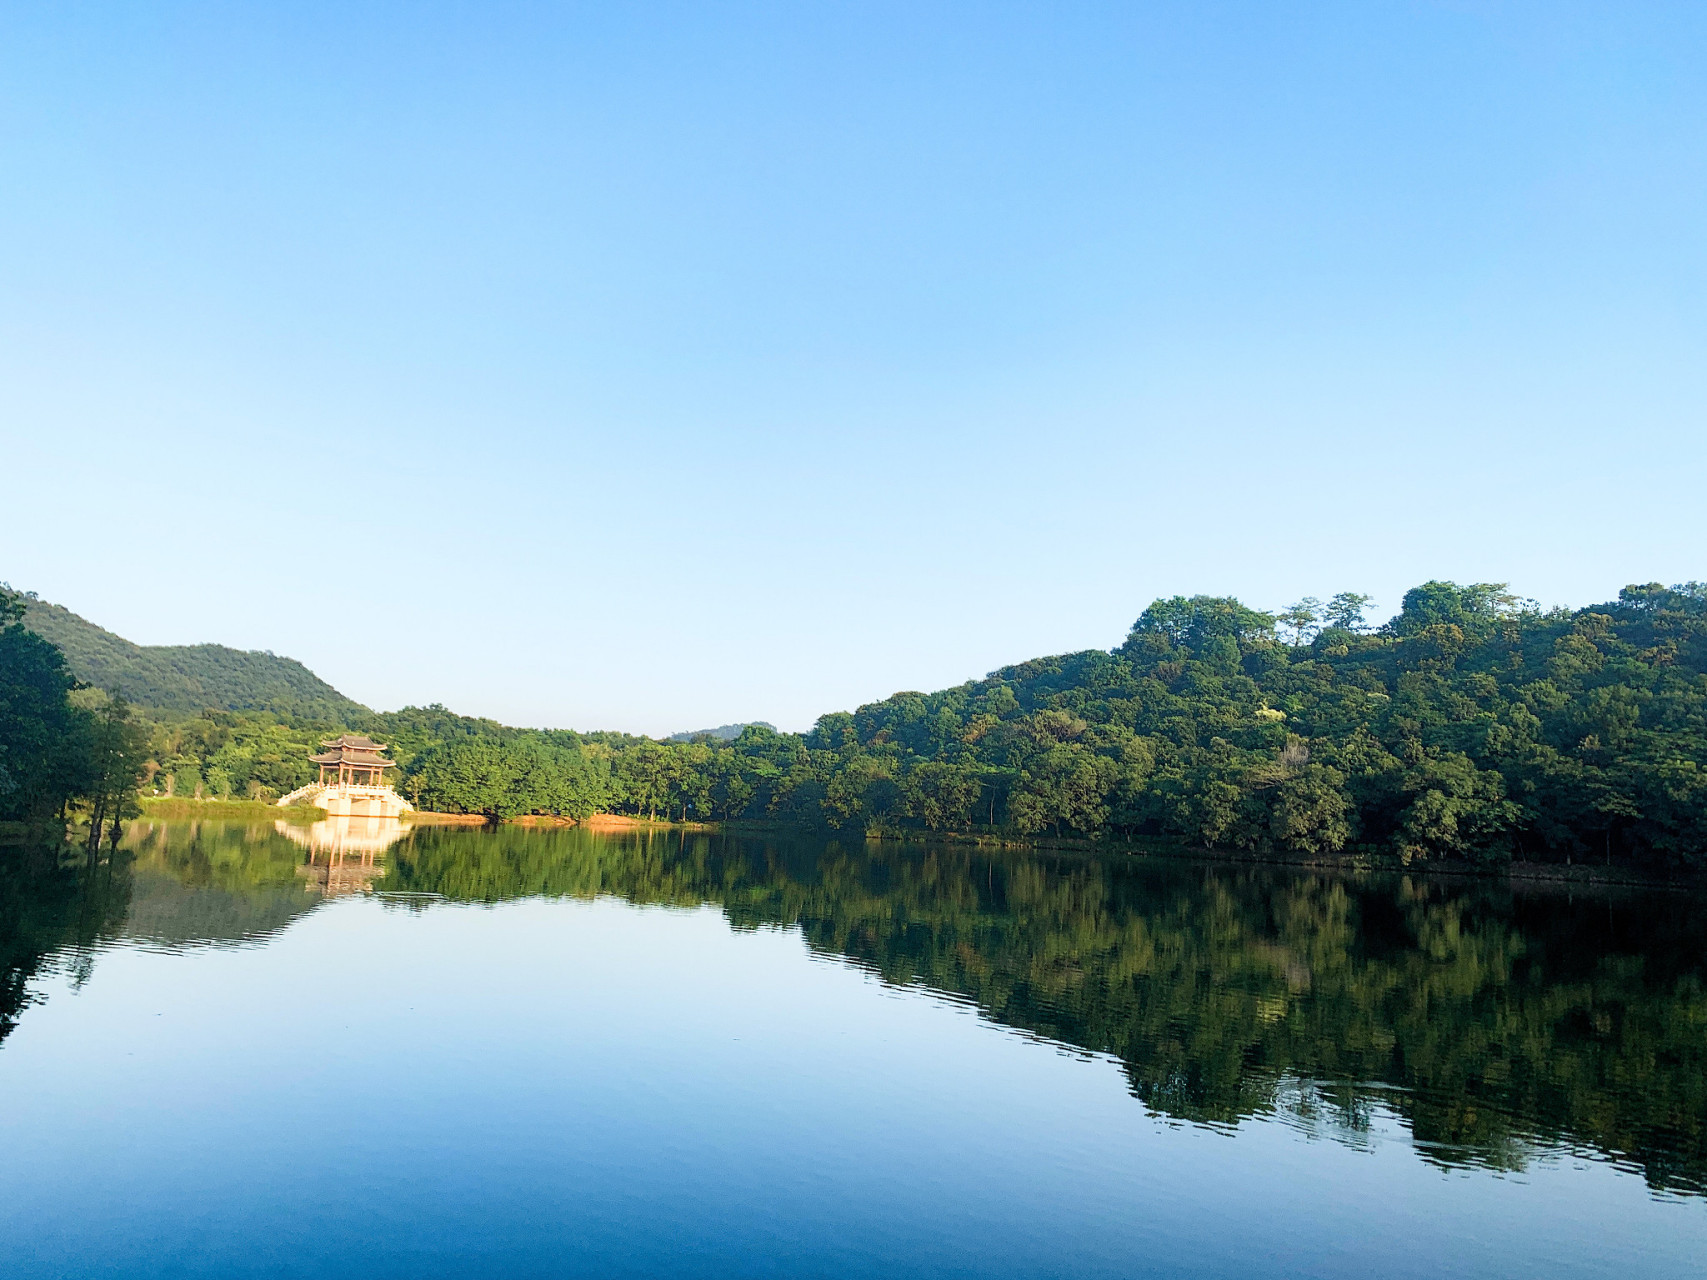 万泉湖风景区以湖光山色,人文景观和休闲娱乐为特色,吸引了众多游客